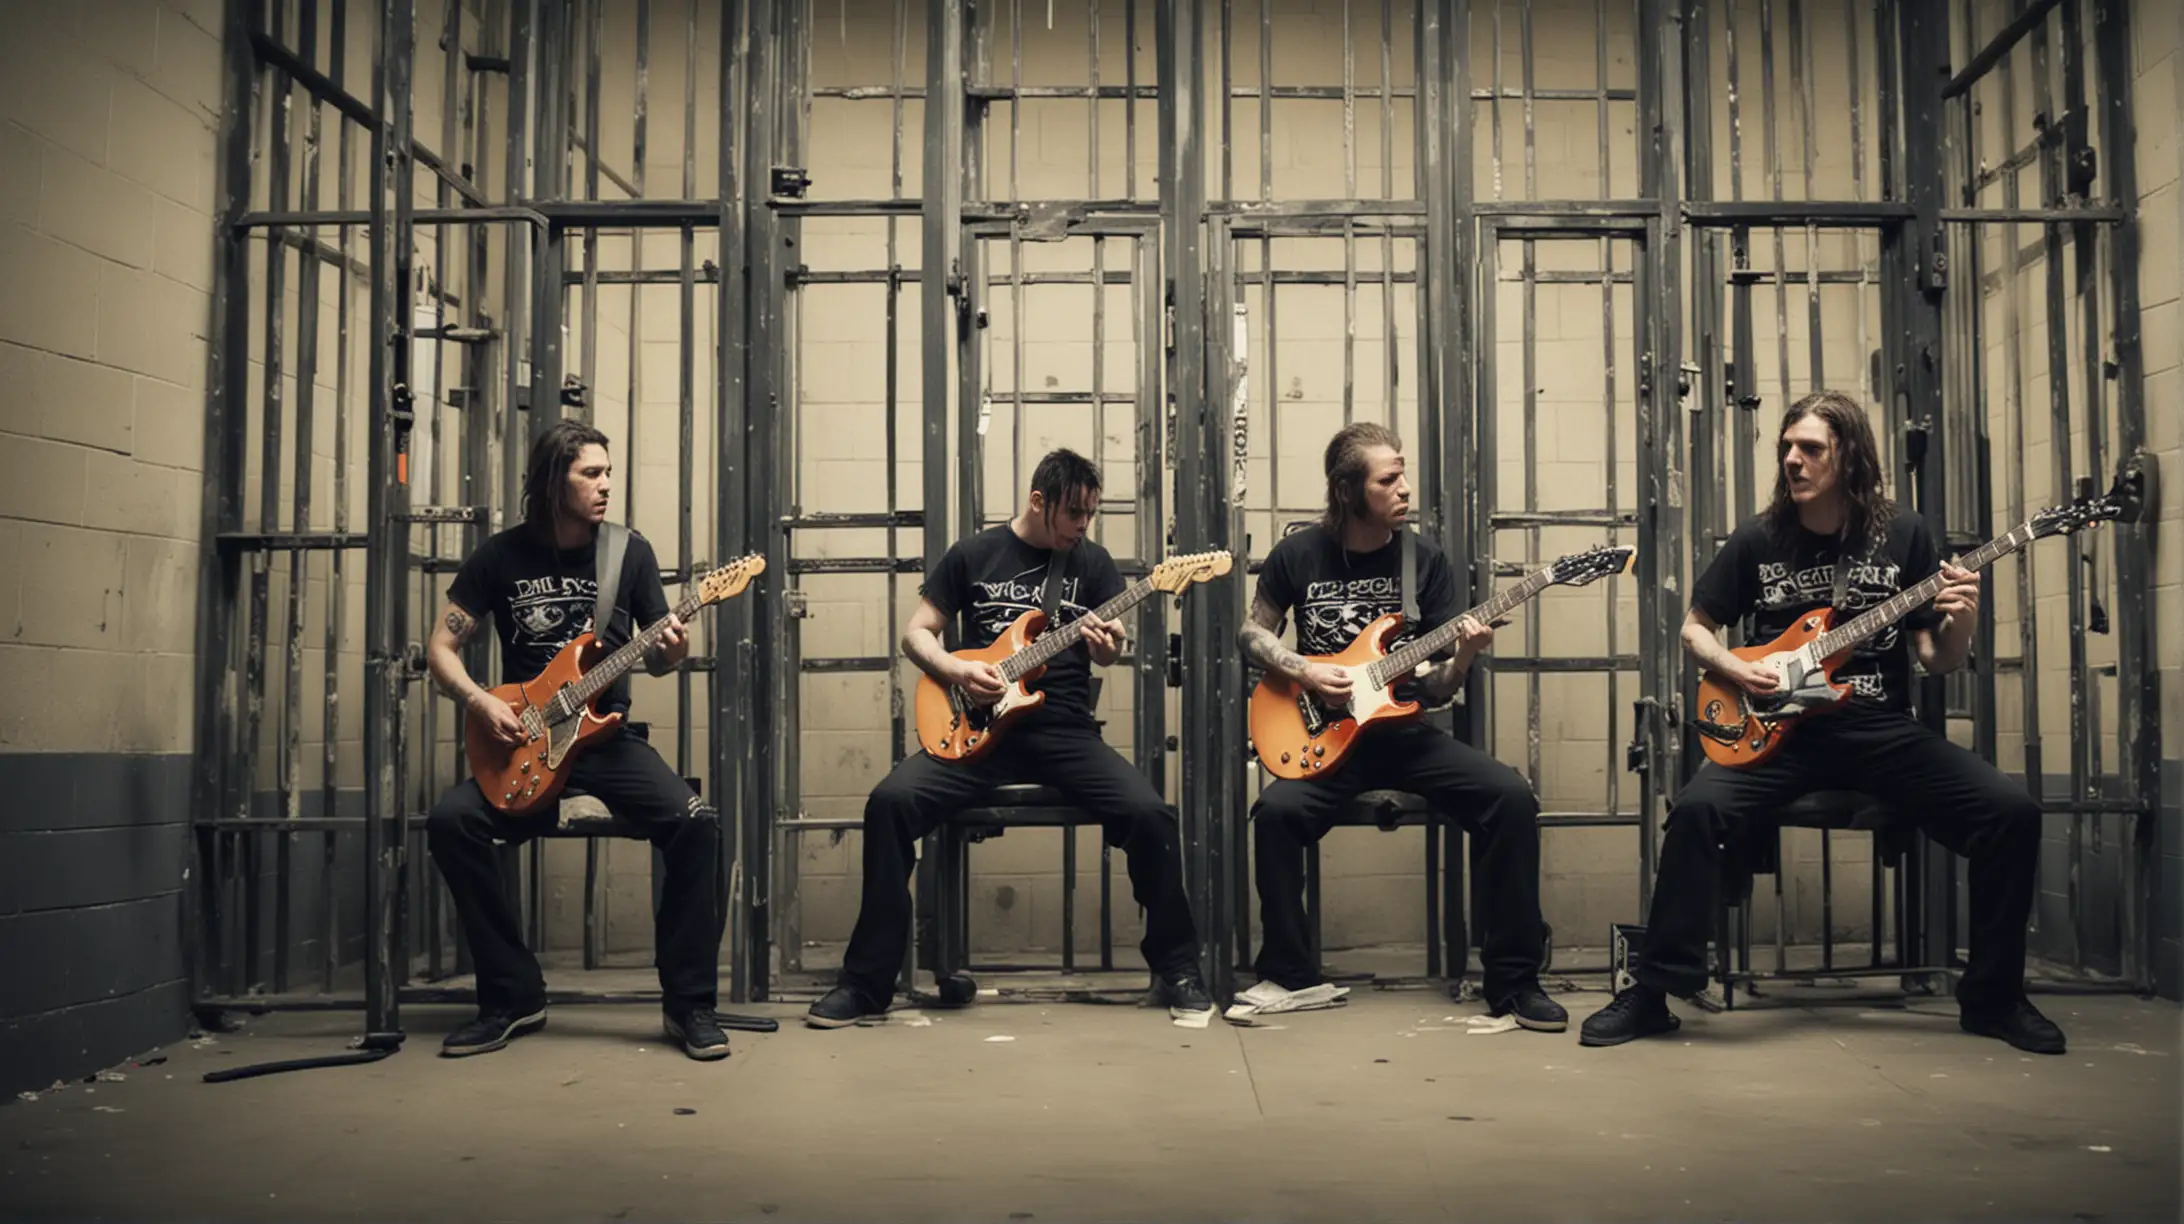 Rock Band Playing Guitars Behind Jail Bars